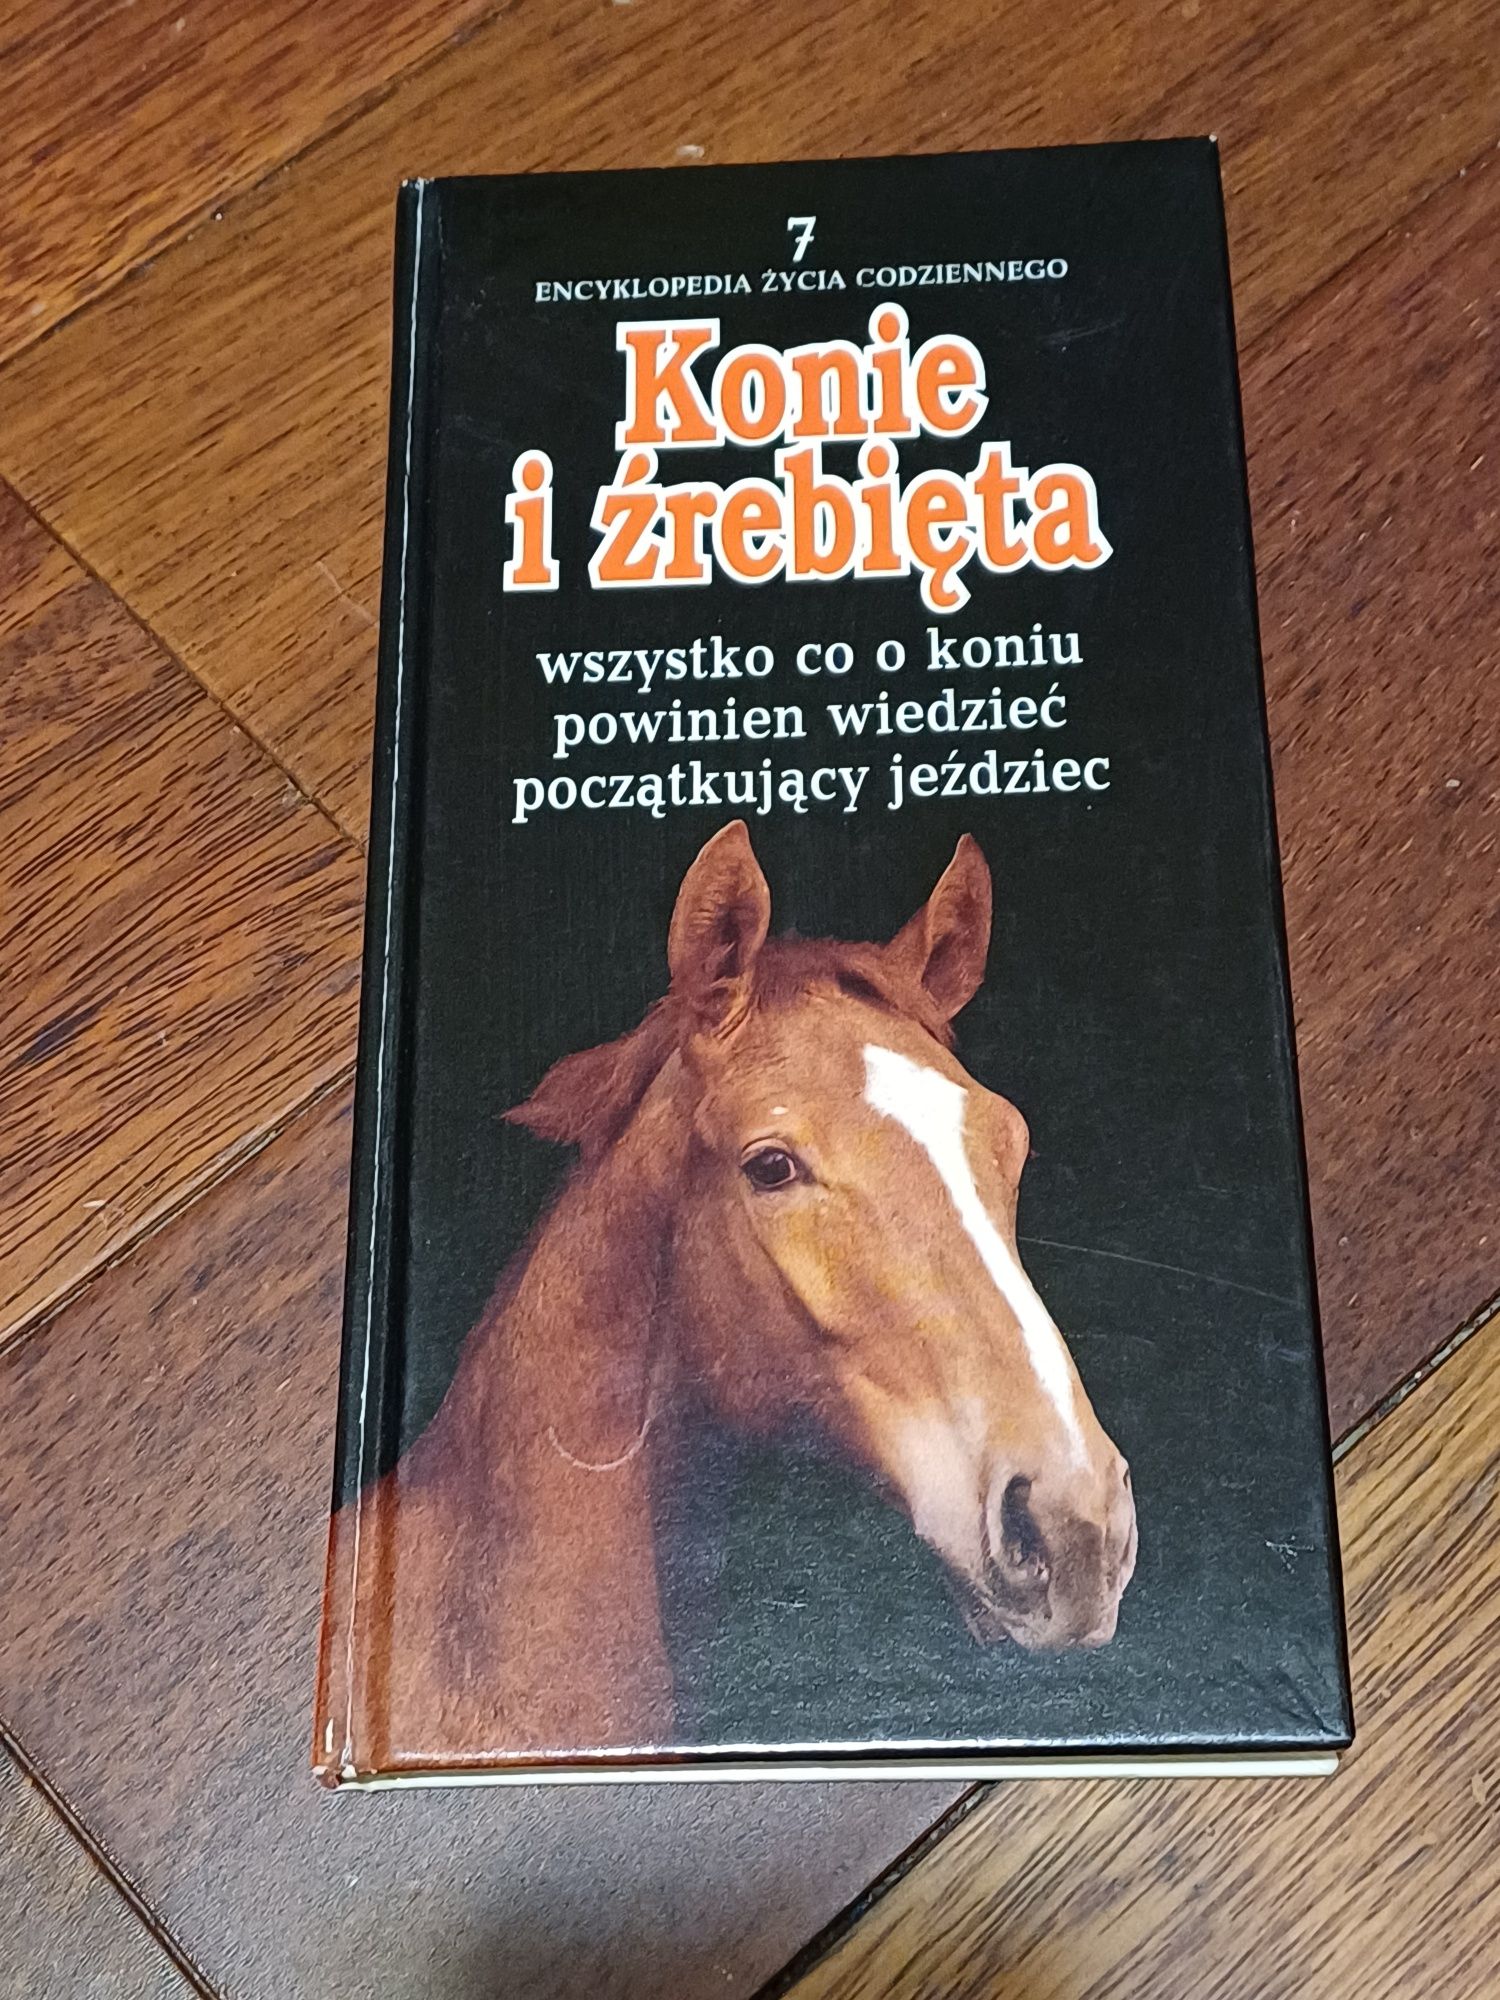 Encyklopedia konie i źrebięta 1993